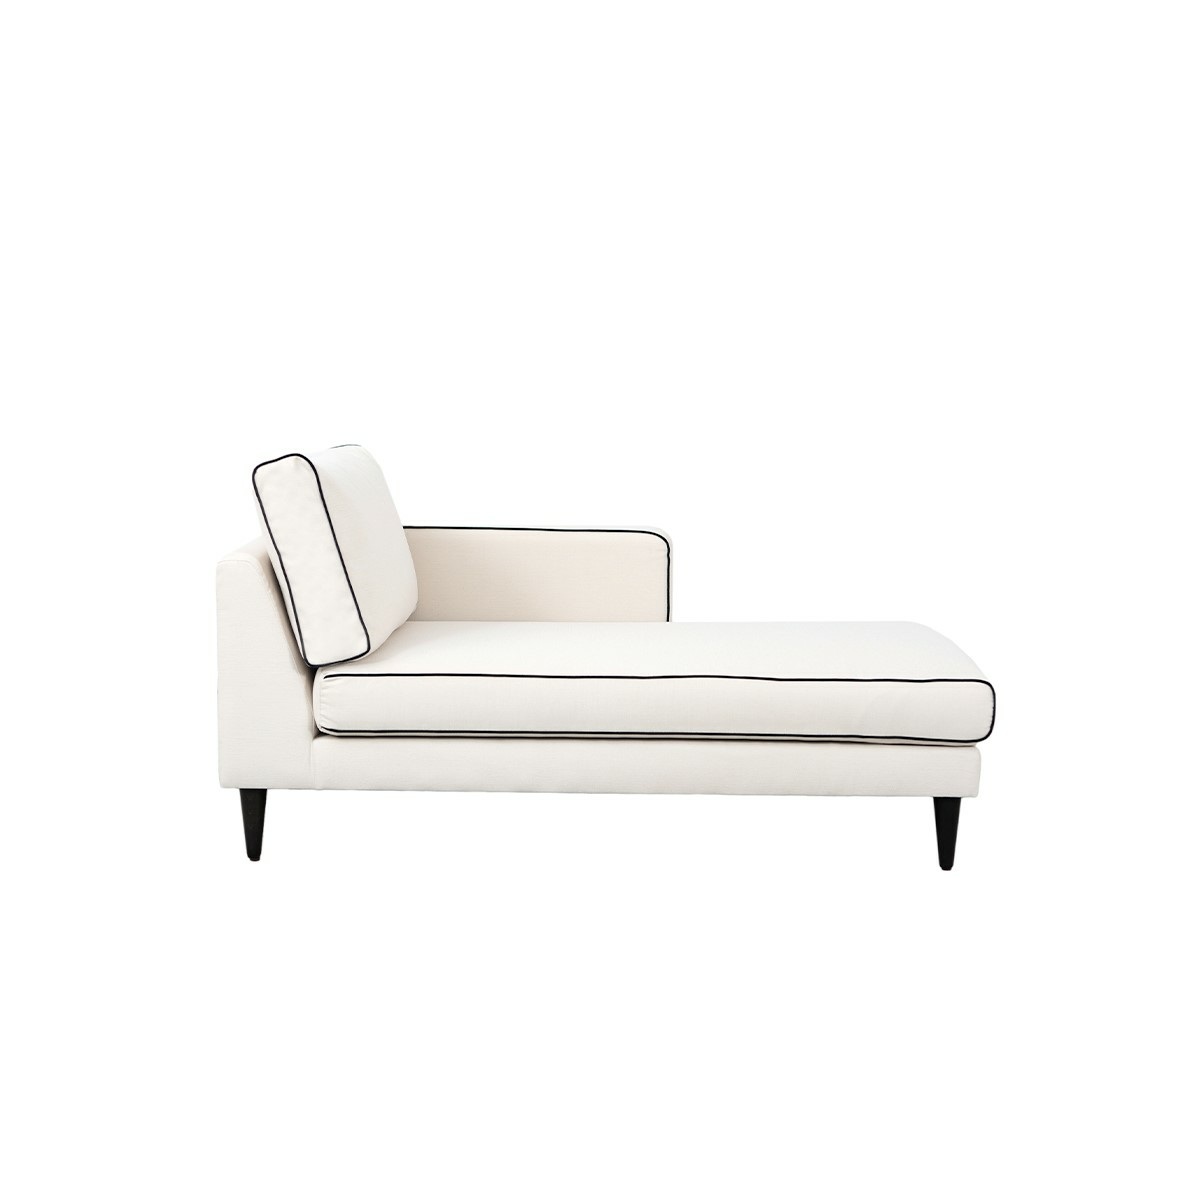 Noa sofa - Right armrest, L150 x P80 x H75 cm - Cotton - image 4